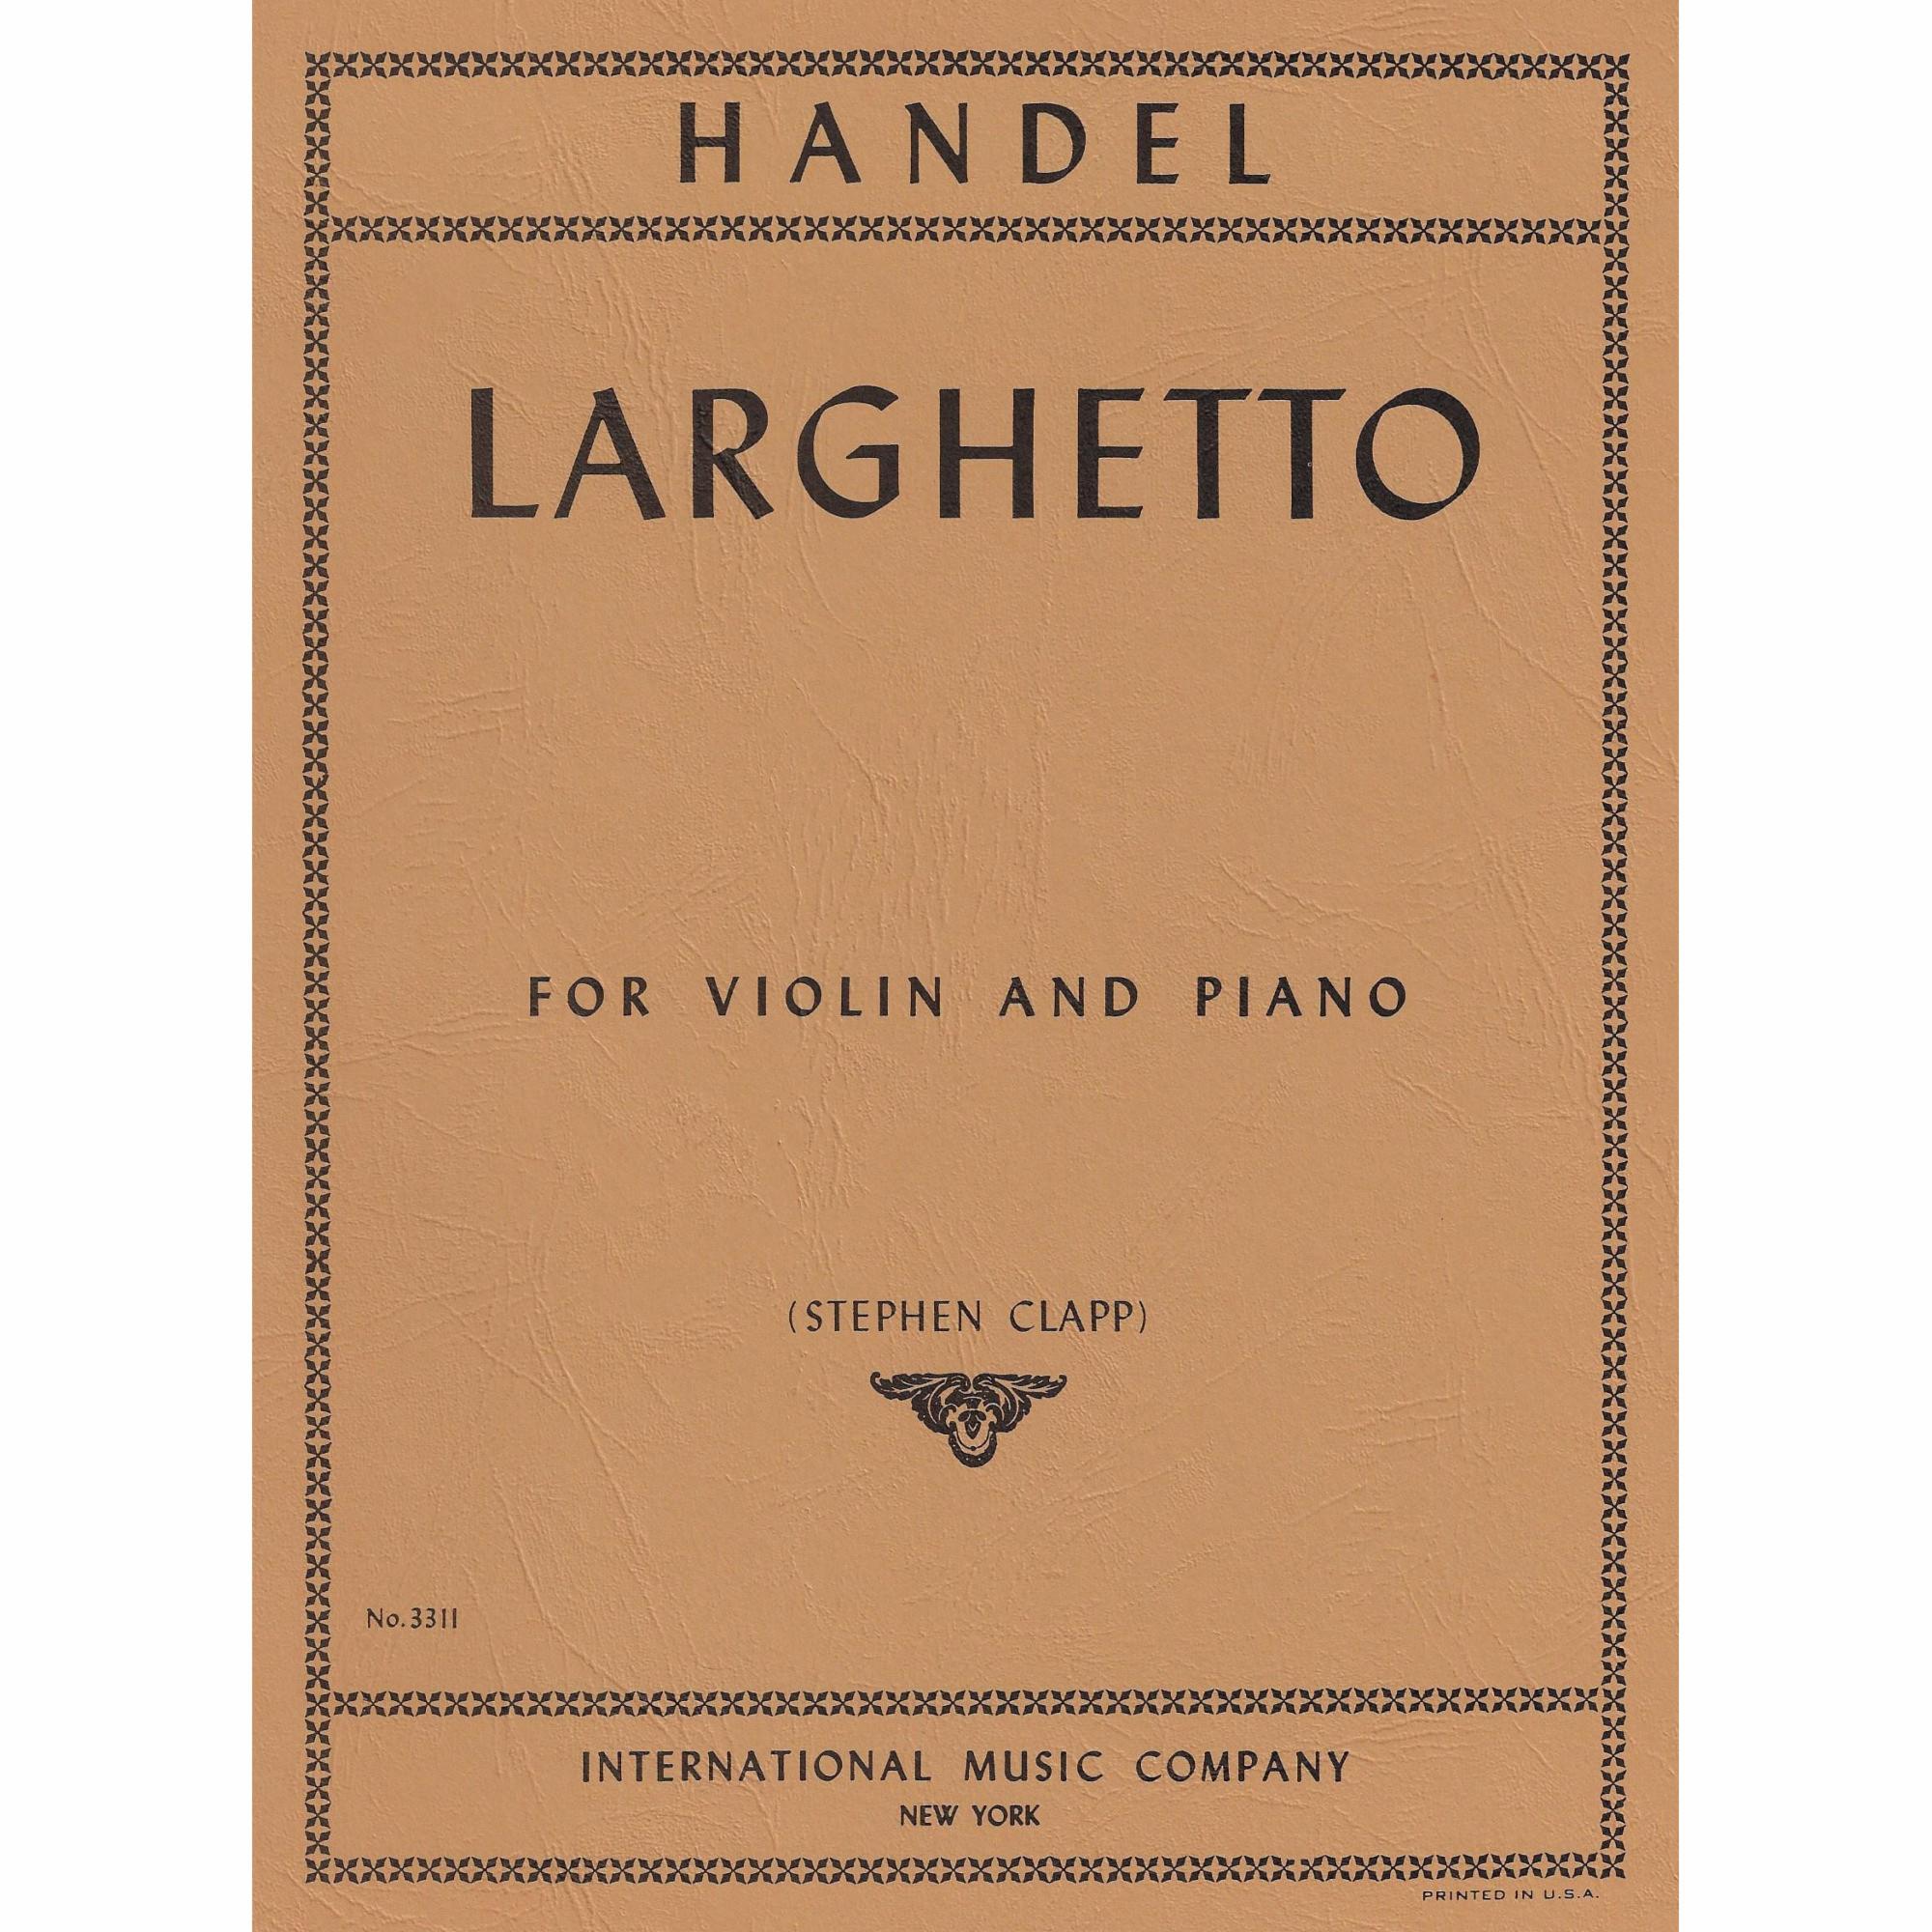 Handel -- Larghetto for Violin and Piano